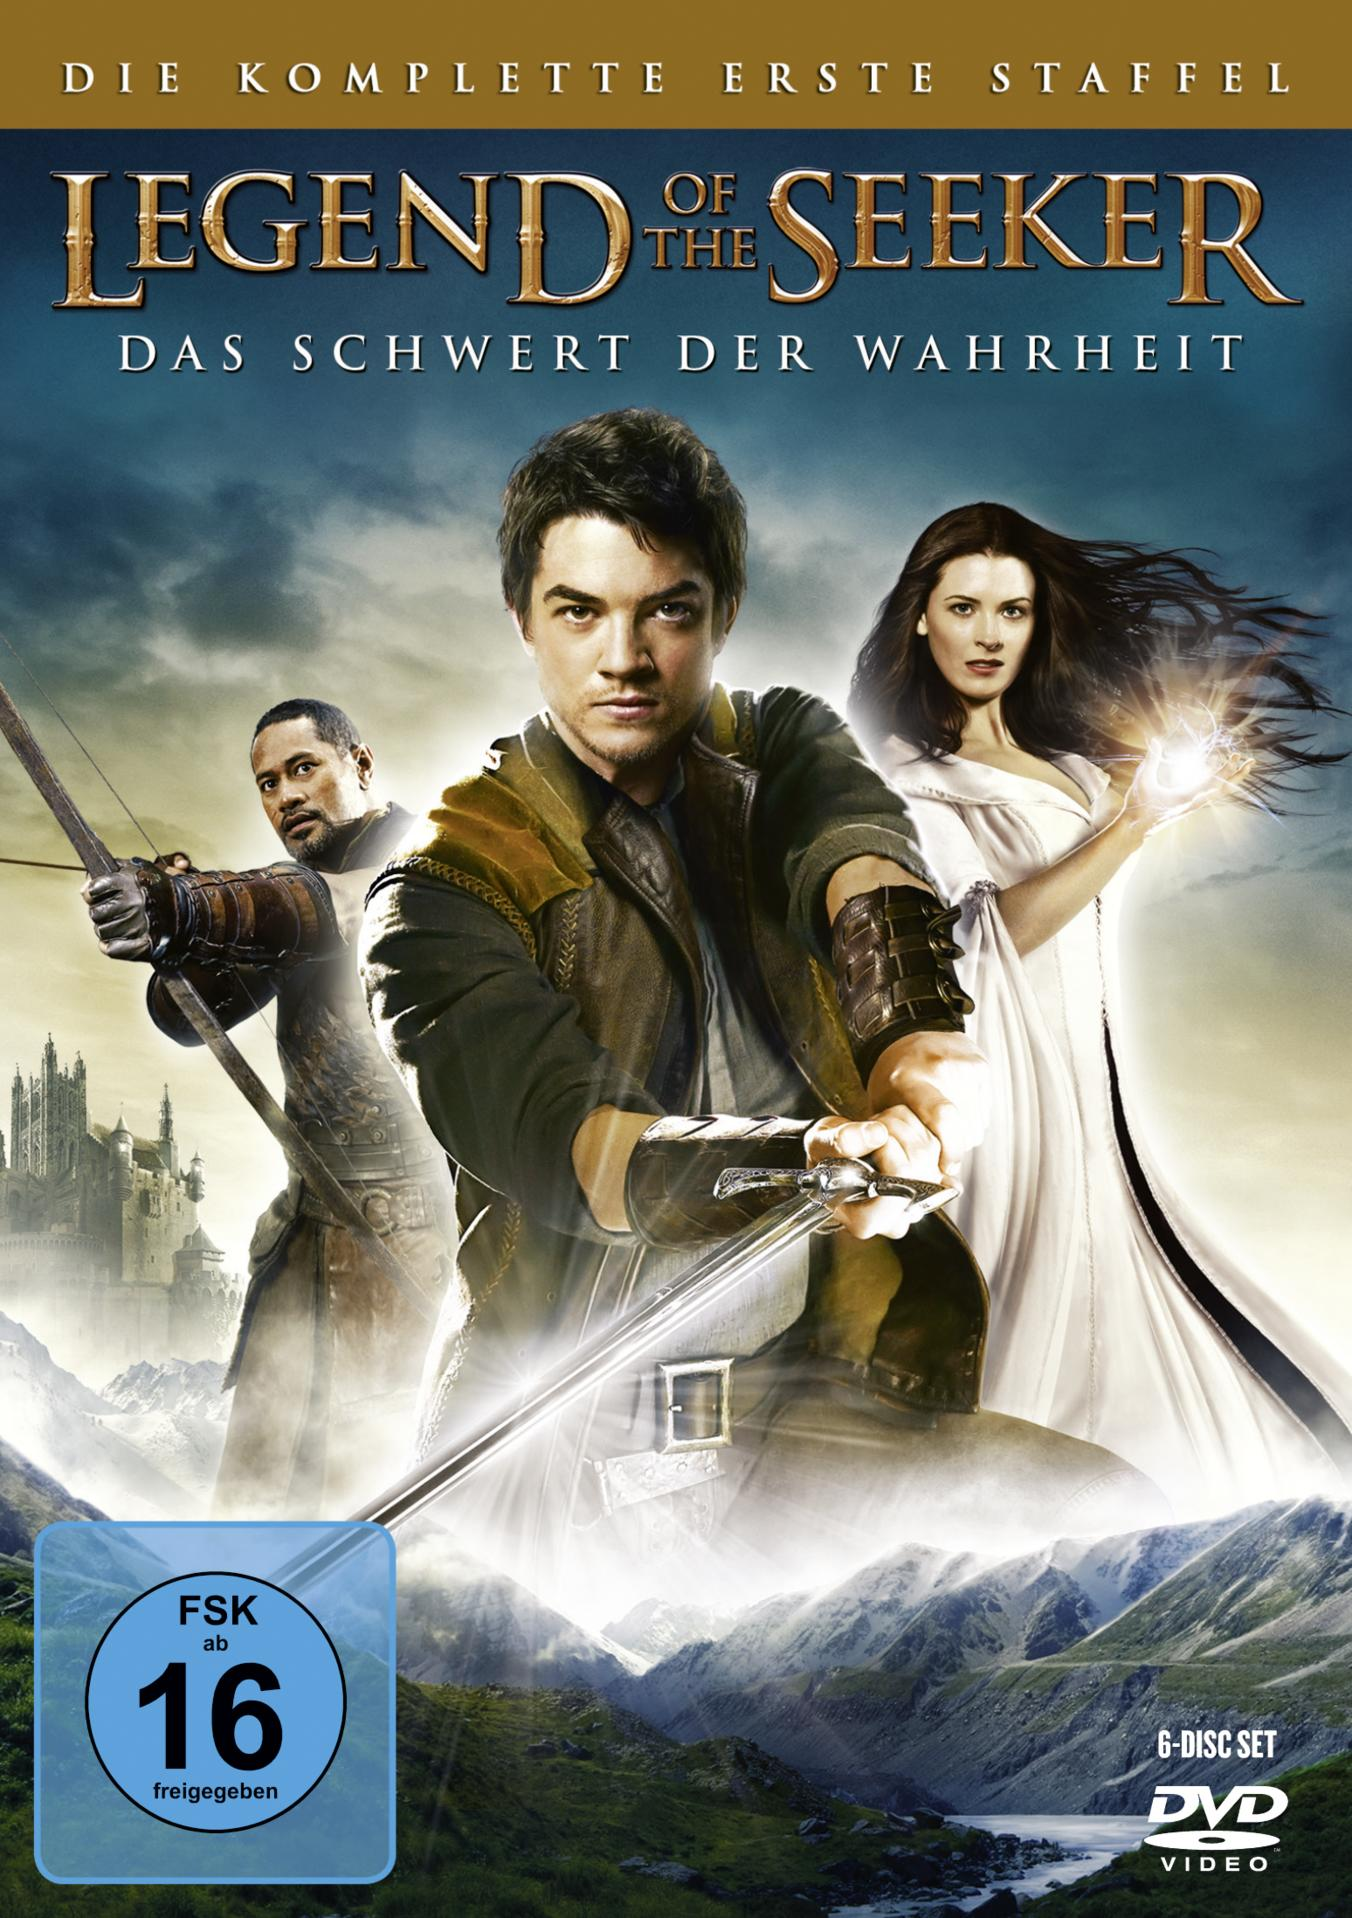 of Die komplette Staffel Legend DVD - Seeker the erste